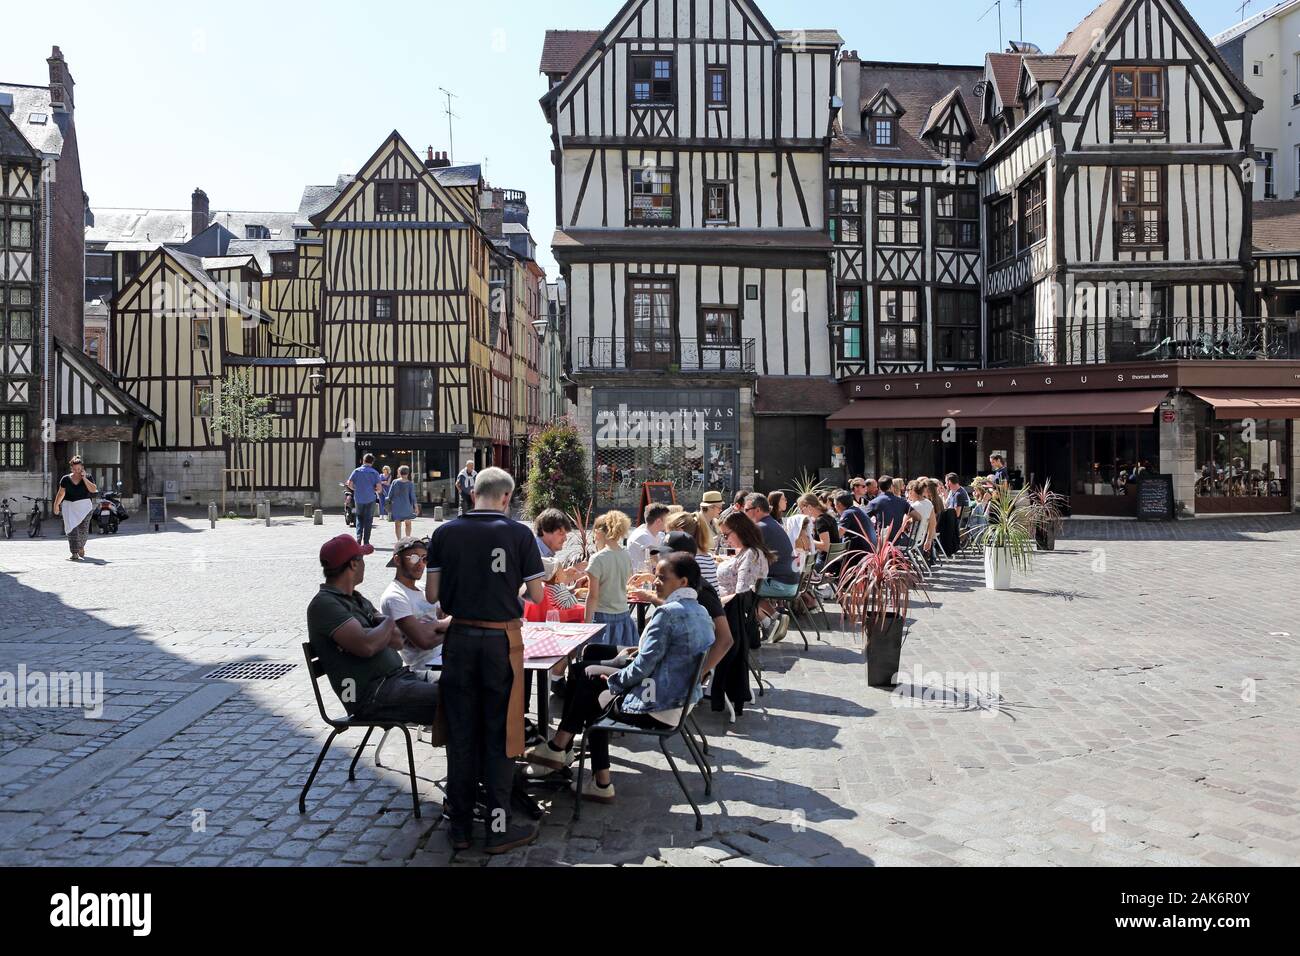 Rouen : Fachwerkhaeuser suis Place Barthelemy, Rouen | utilisée dans le monde entier Banque D'Images